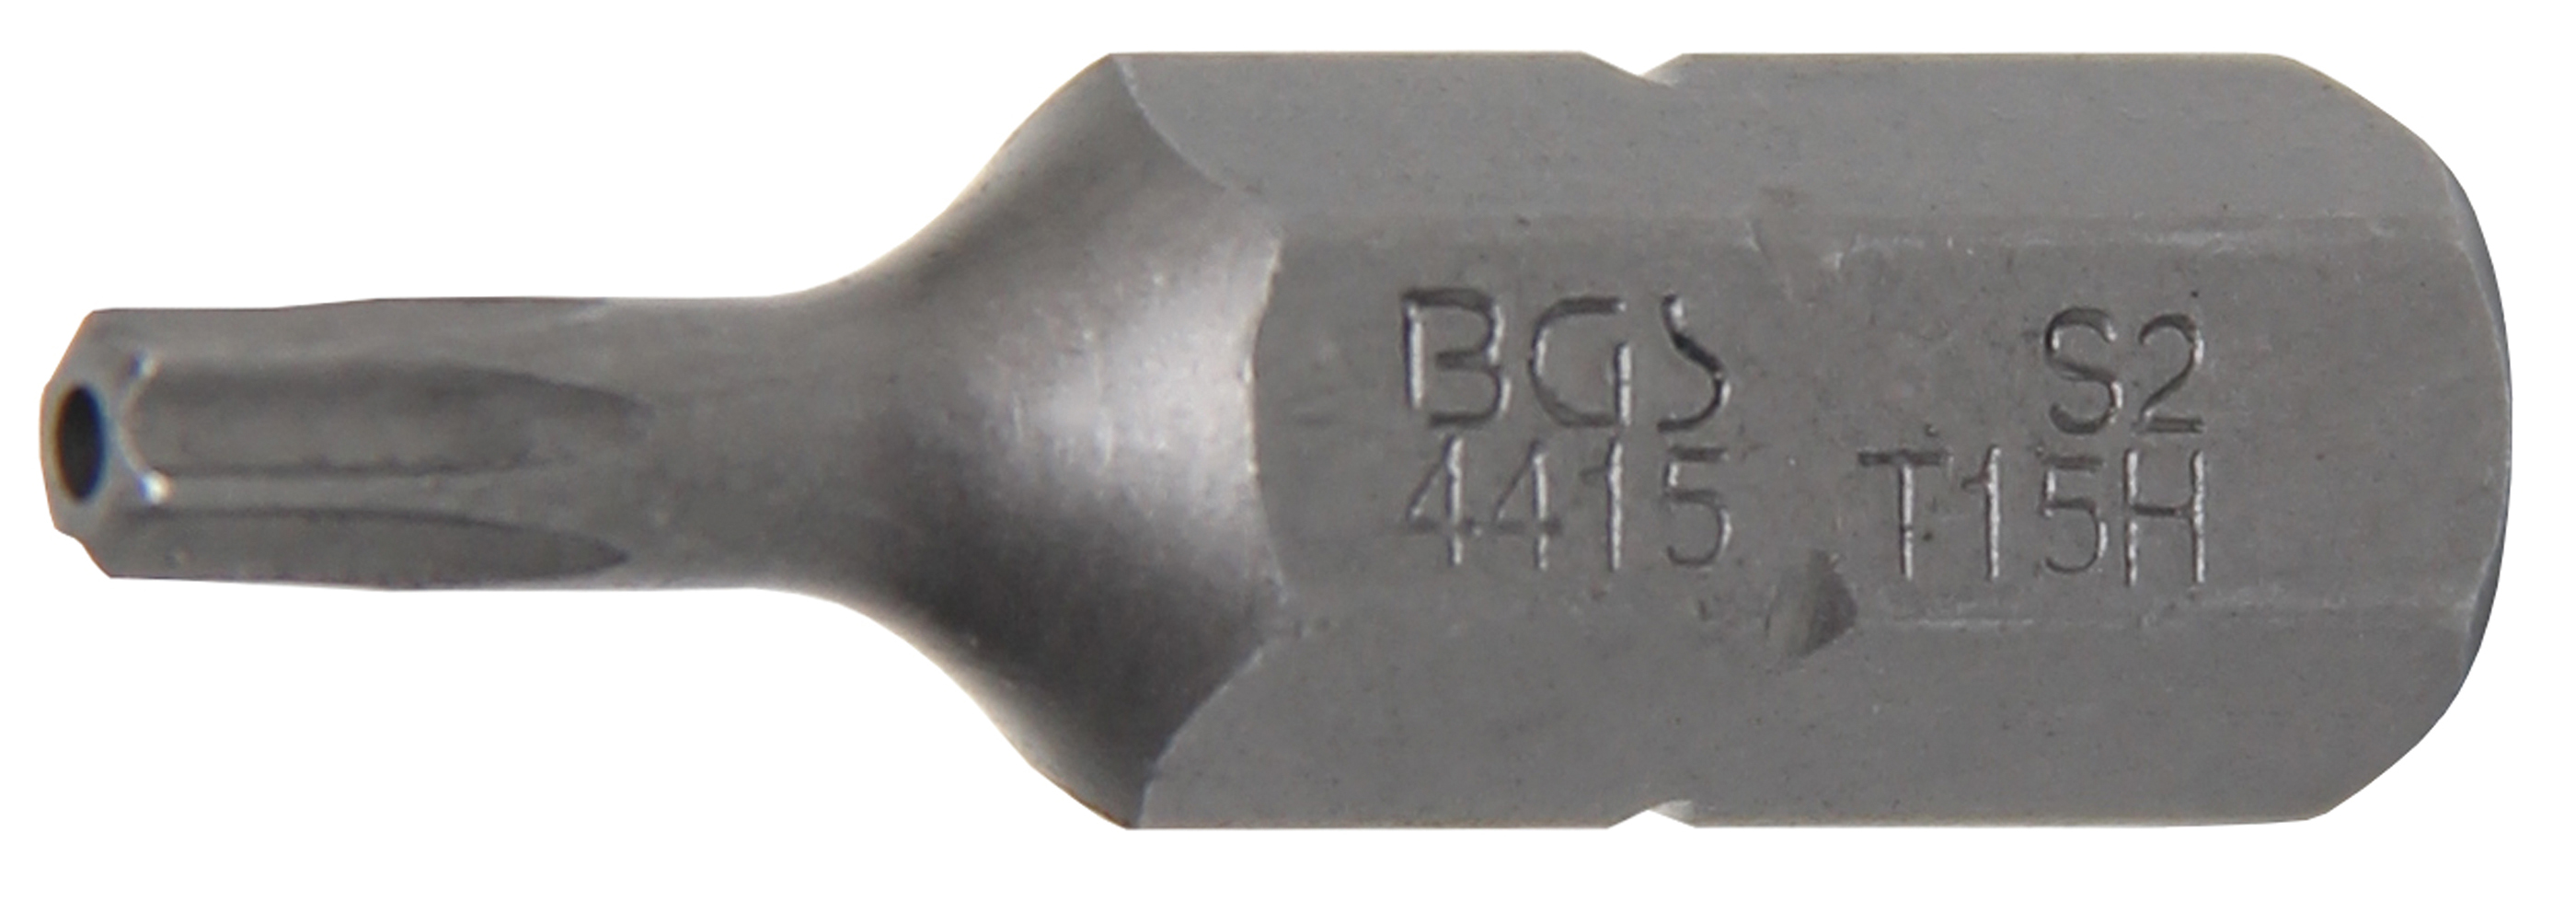 BGS 4415 Bit Torx T15 cu gaura de securizare, lungime 30 mm, antrenare 5/16"